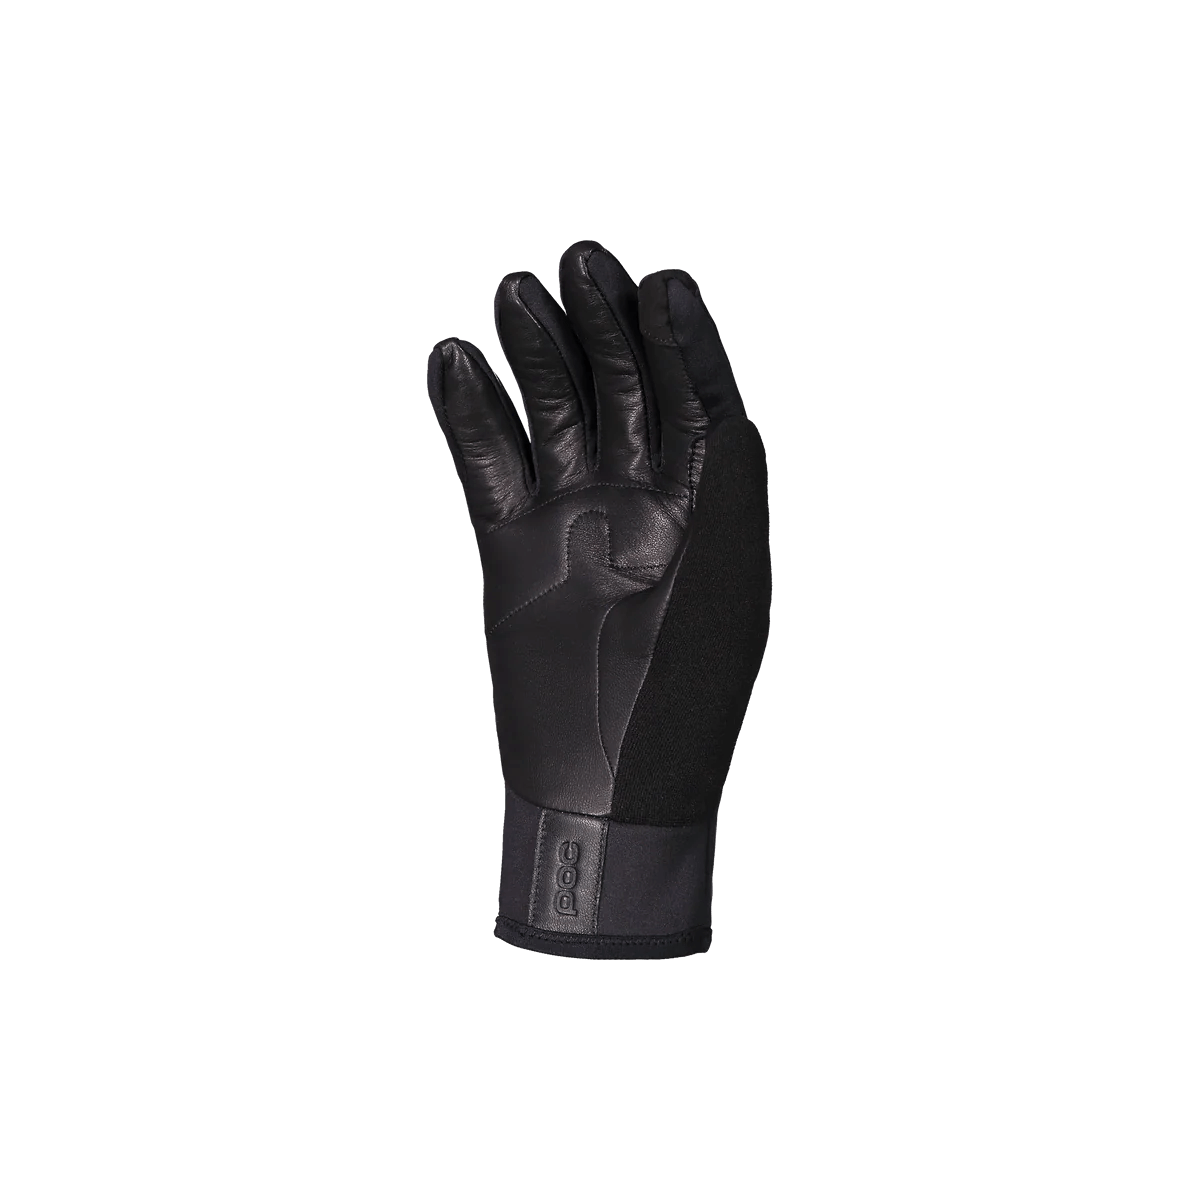 バイクグローブ 30281-1002 サーマルグローブ Thermal Glove - Uranium Black [ユニセックス]